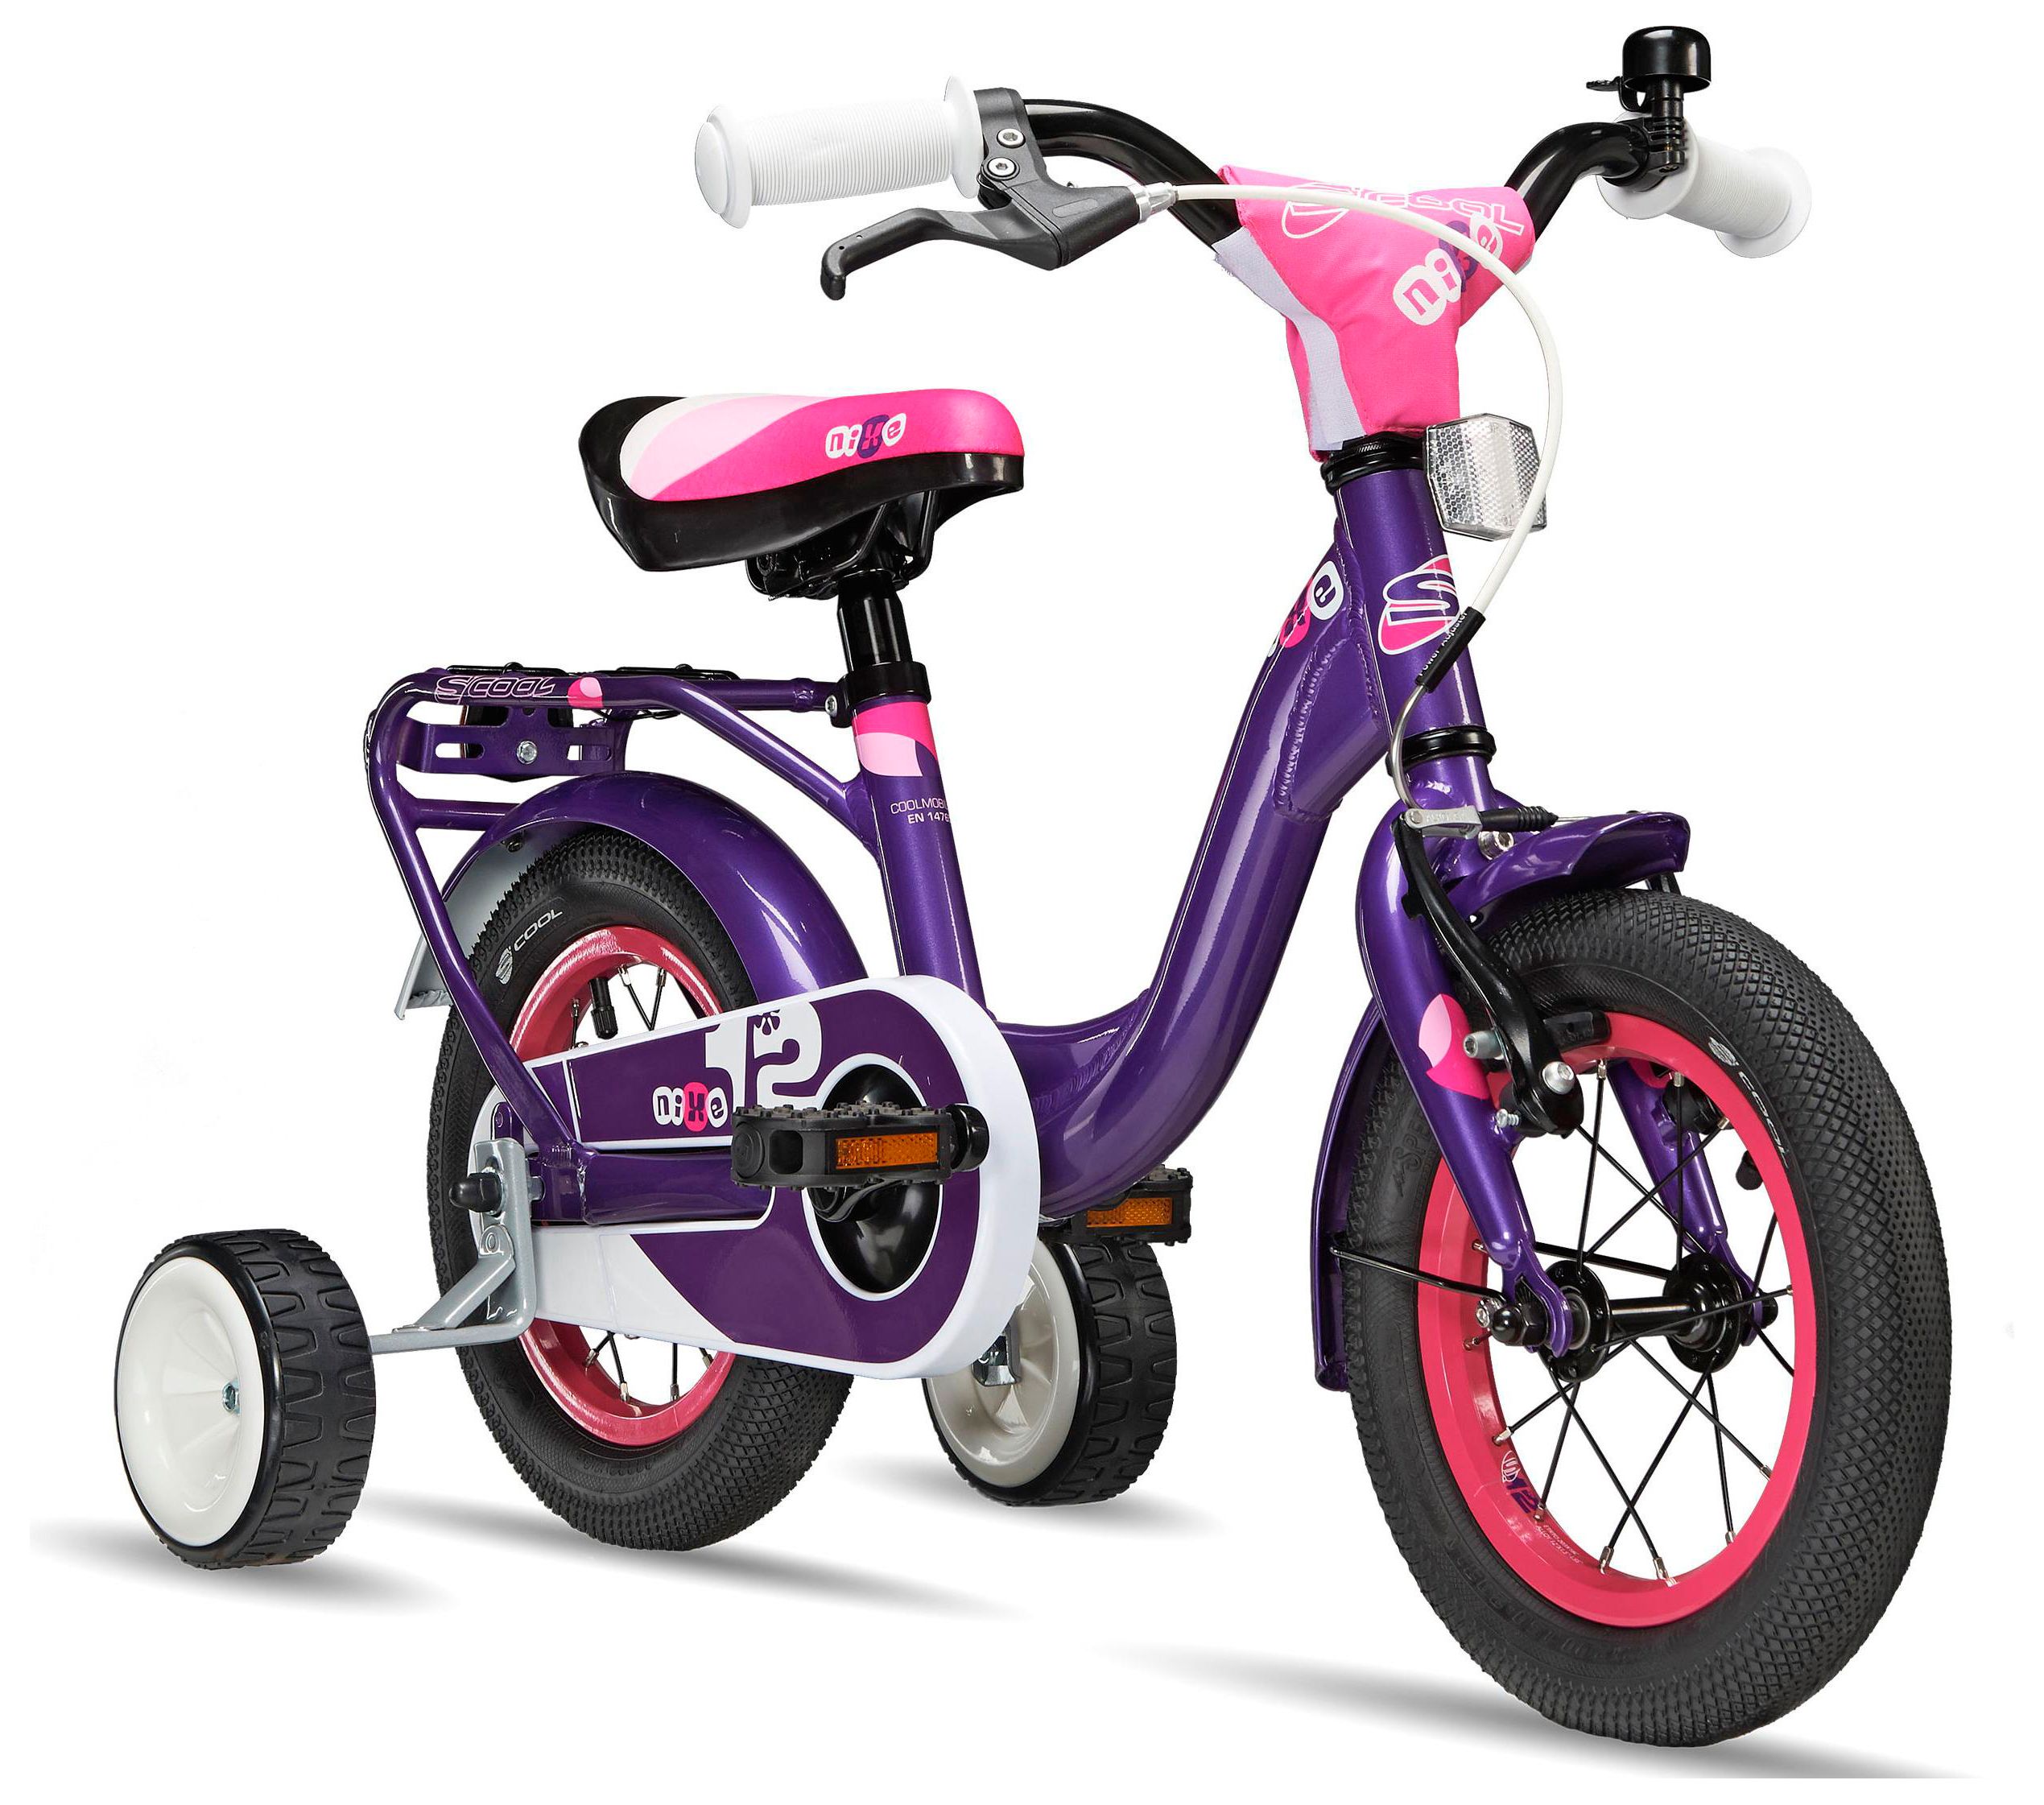 Детский велосипед. Велосипед Scool Nixe 12". Детский велосипед s'cool Nixe 12 Alloy. Дети с велосипедом. Велосипед детский четырехколесный.